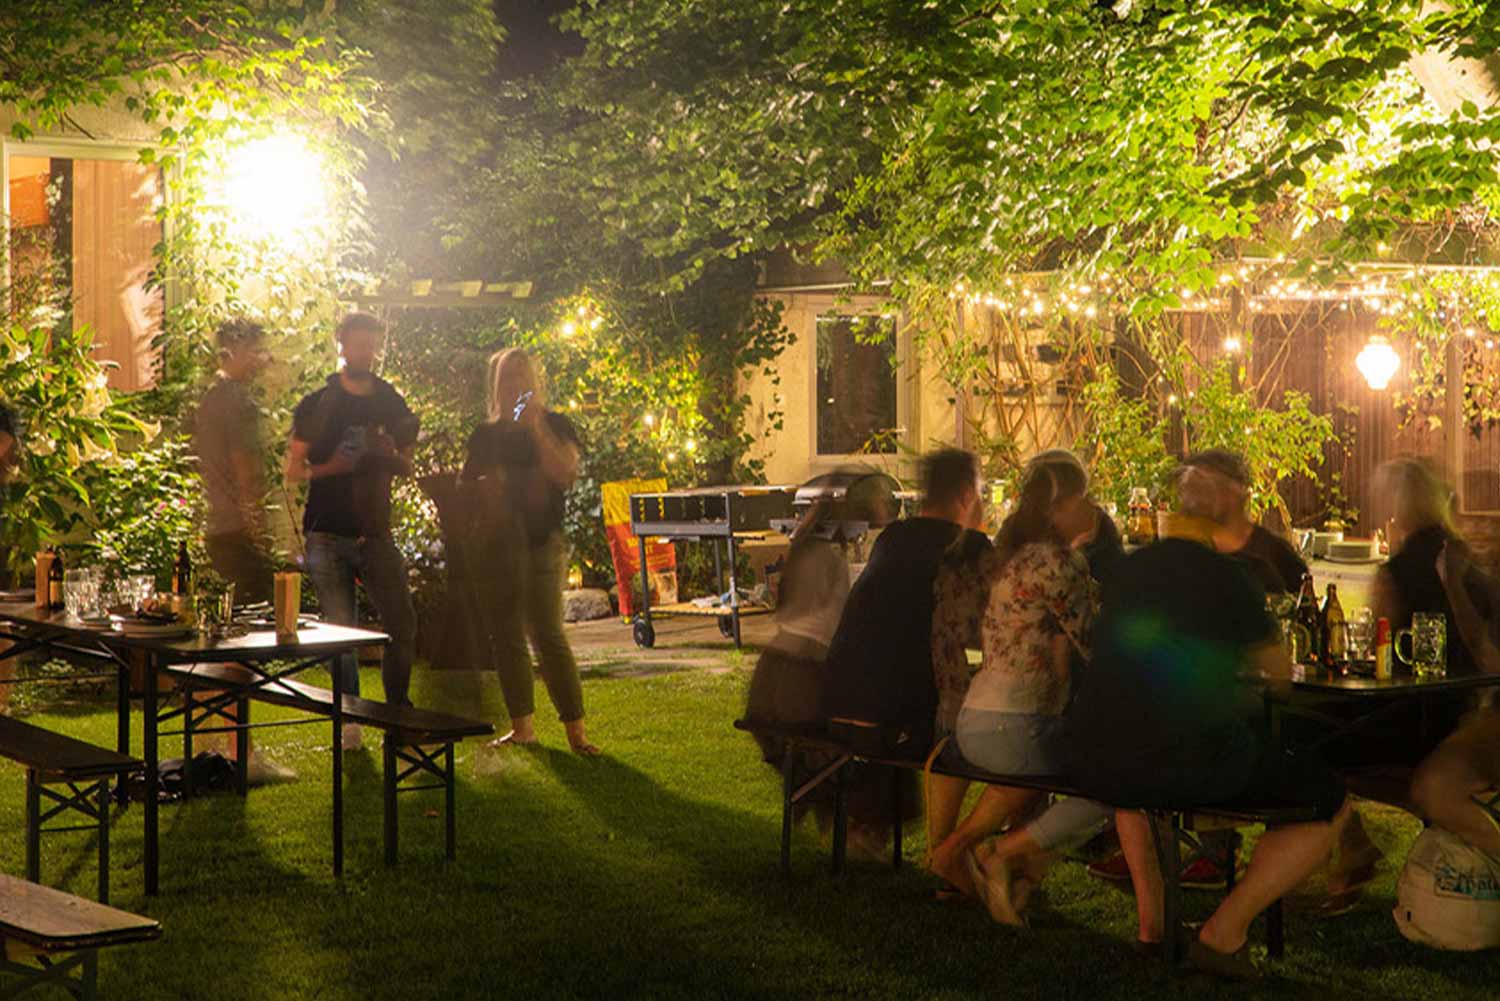 PINC Garten im dunkeln während einer Party. Menschen sitzen auf Bierbänken und unterhalten sich oder stehen mit einem Glas in der Hand da.